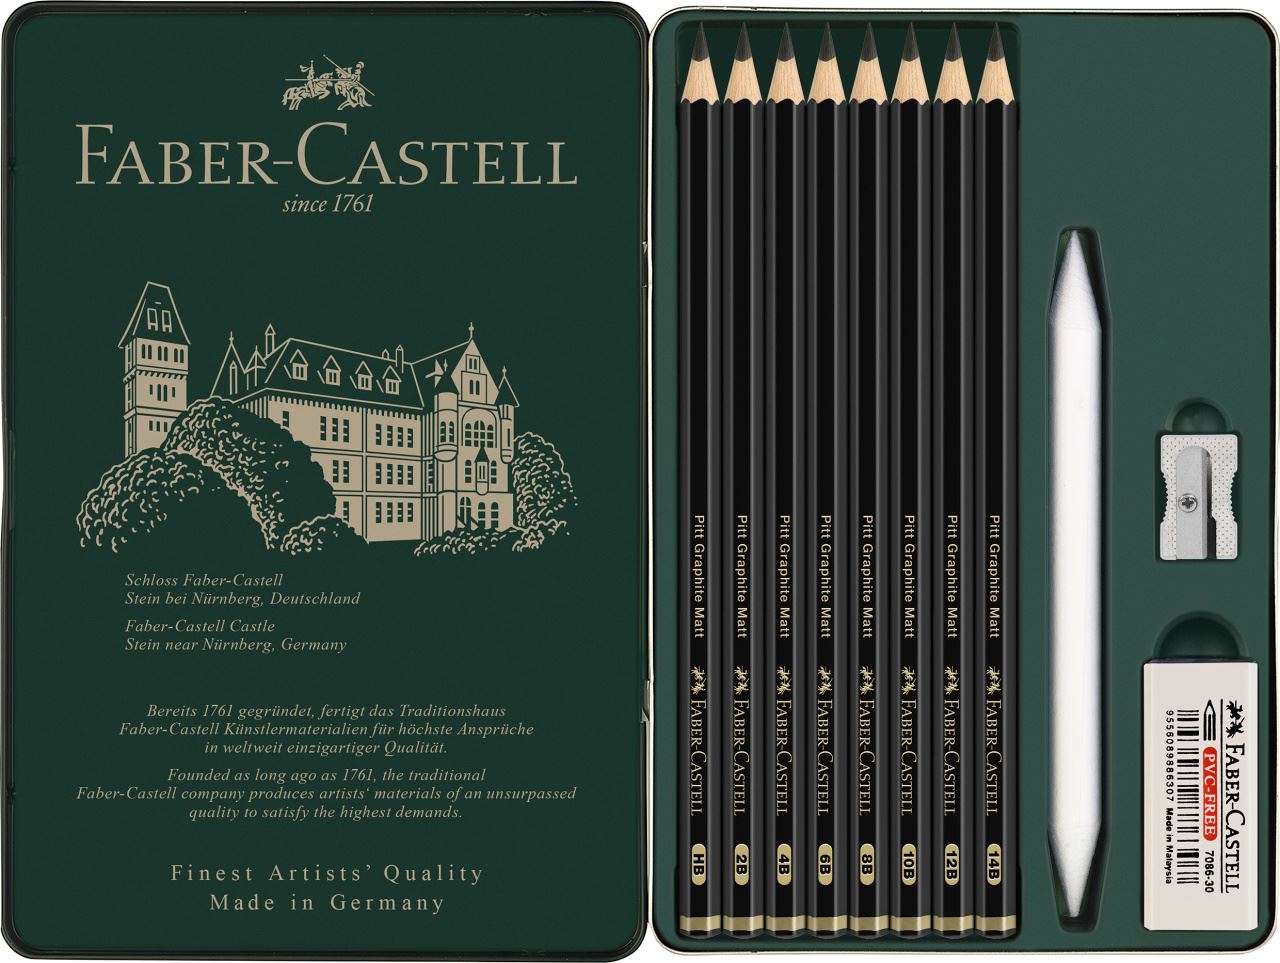 Faber-Castell - Estuche de metal de Pitt Graphite Matt x11